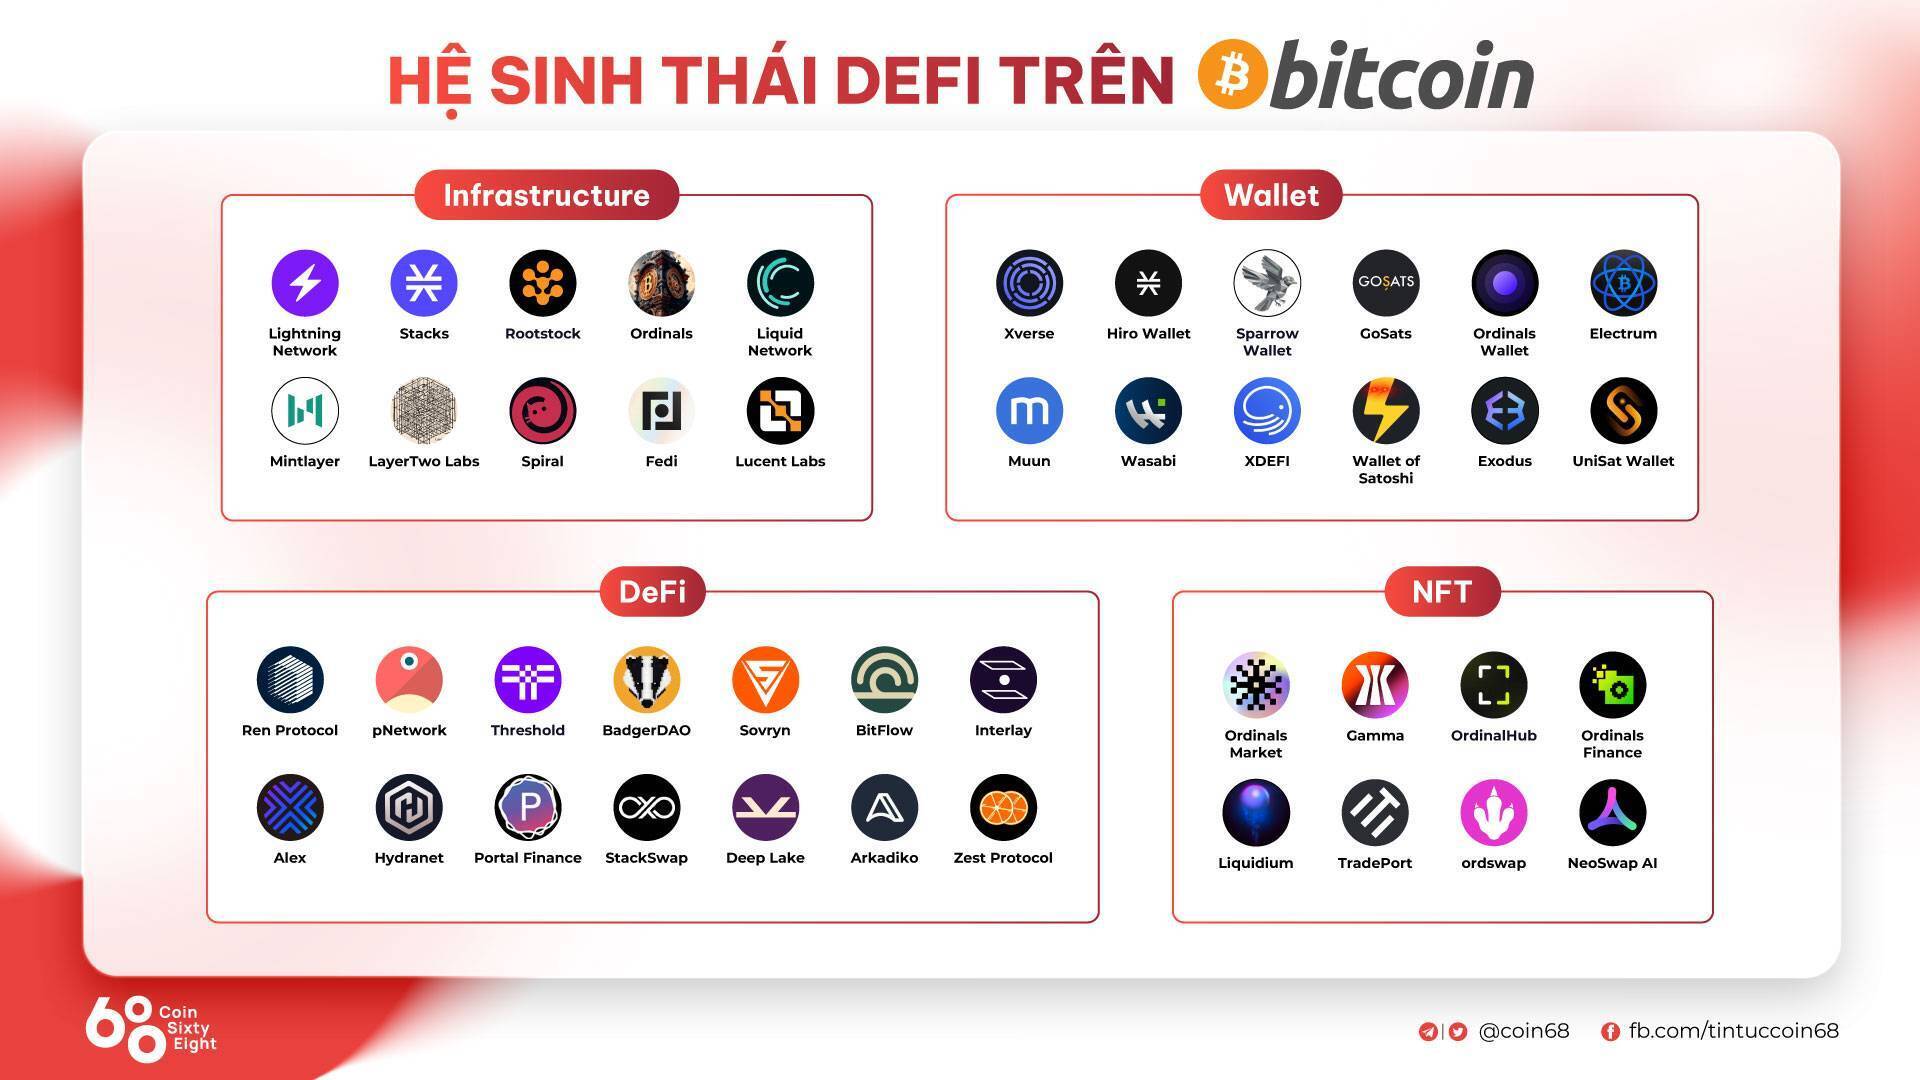 Tổng Quan Hệ Sinh Thái Defi Trên Bitcoin